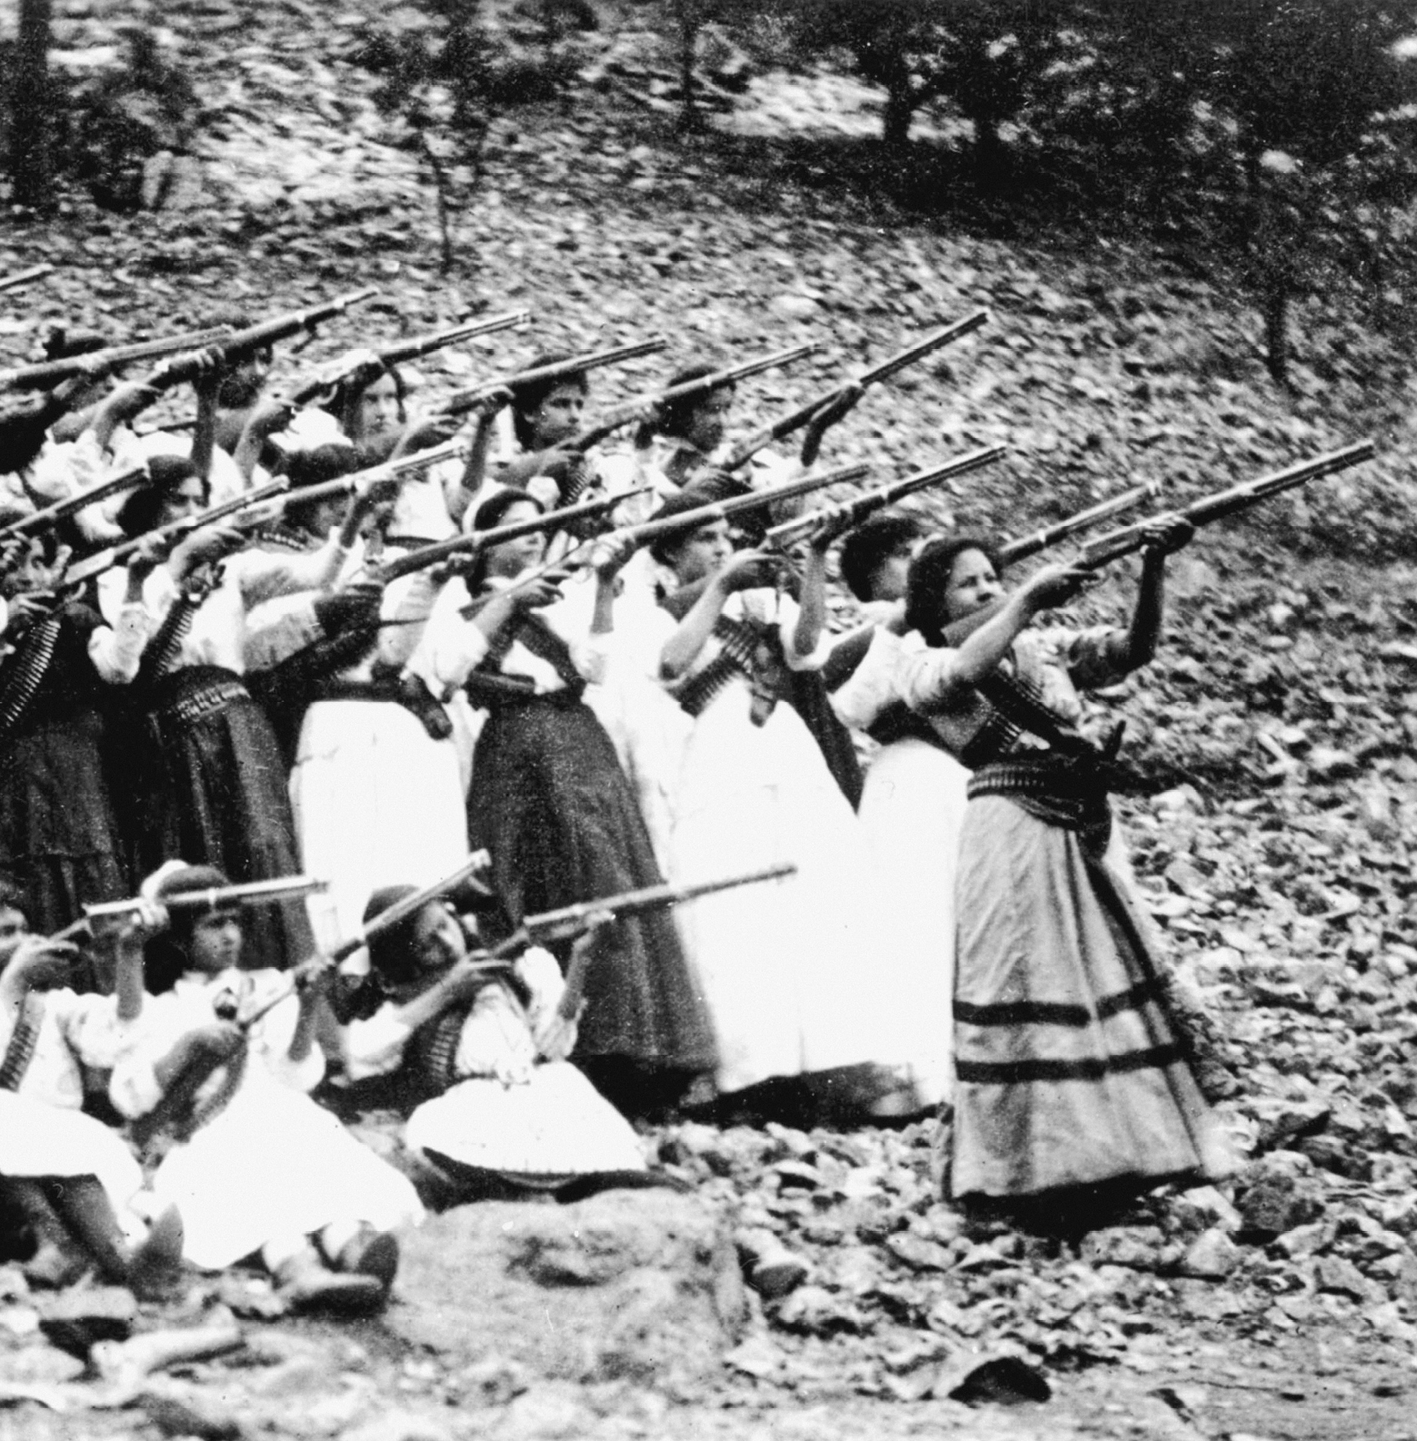 Fotografia em preto e branco. Grupo de mulheres na parte baixa de uma colina. Estão empunhando e apontando armas de cano longo para o alto, à direita.